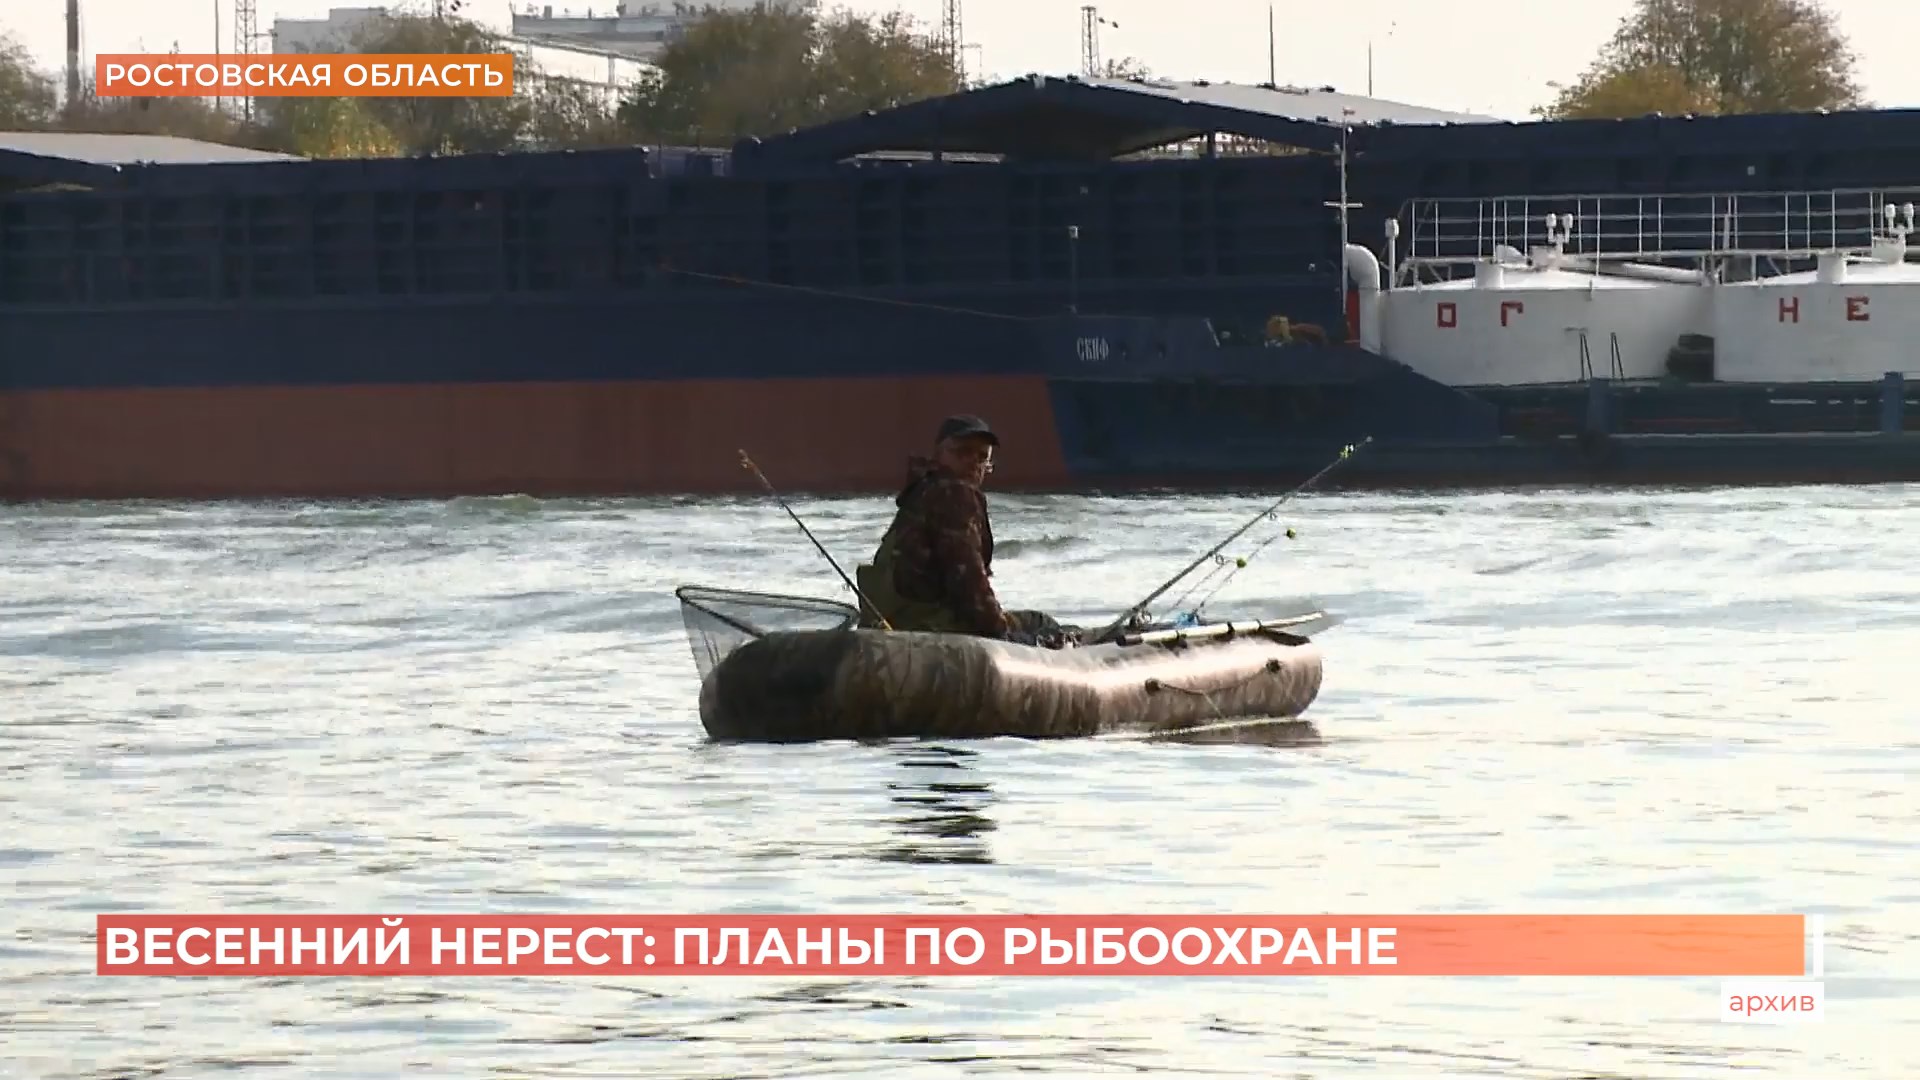 Весенний нерест и планы по рыбоохране  обсудили  на  рыбохозяйственном  совете Ростовской области